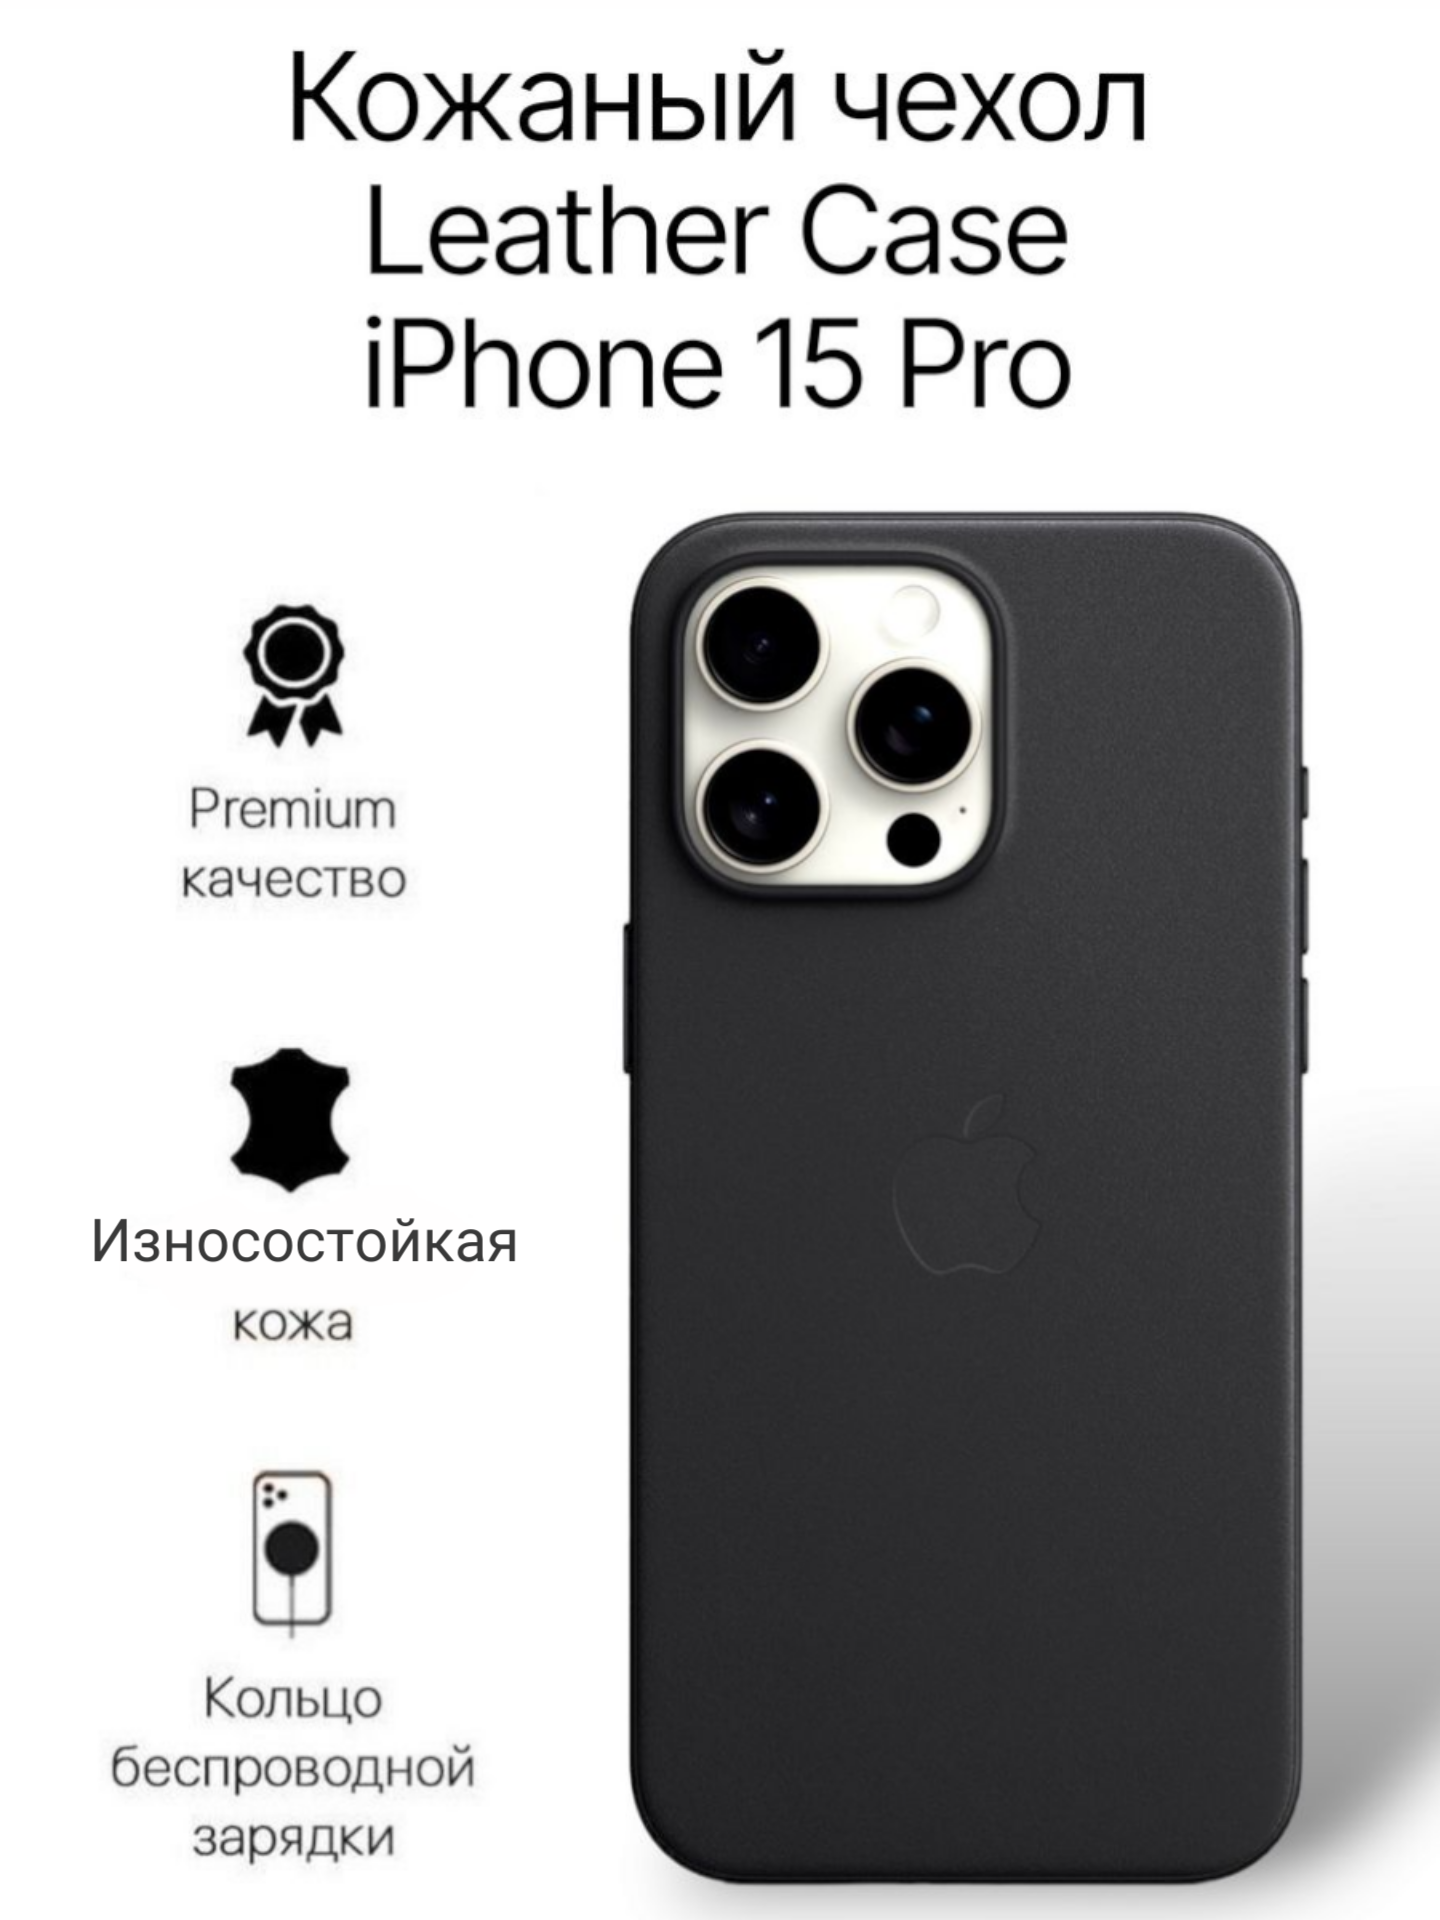 Кожаный чехол на iPhone 15 Pro с функцией MagSafe, черный - Black